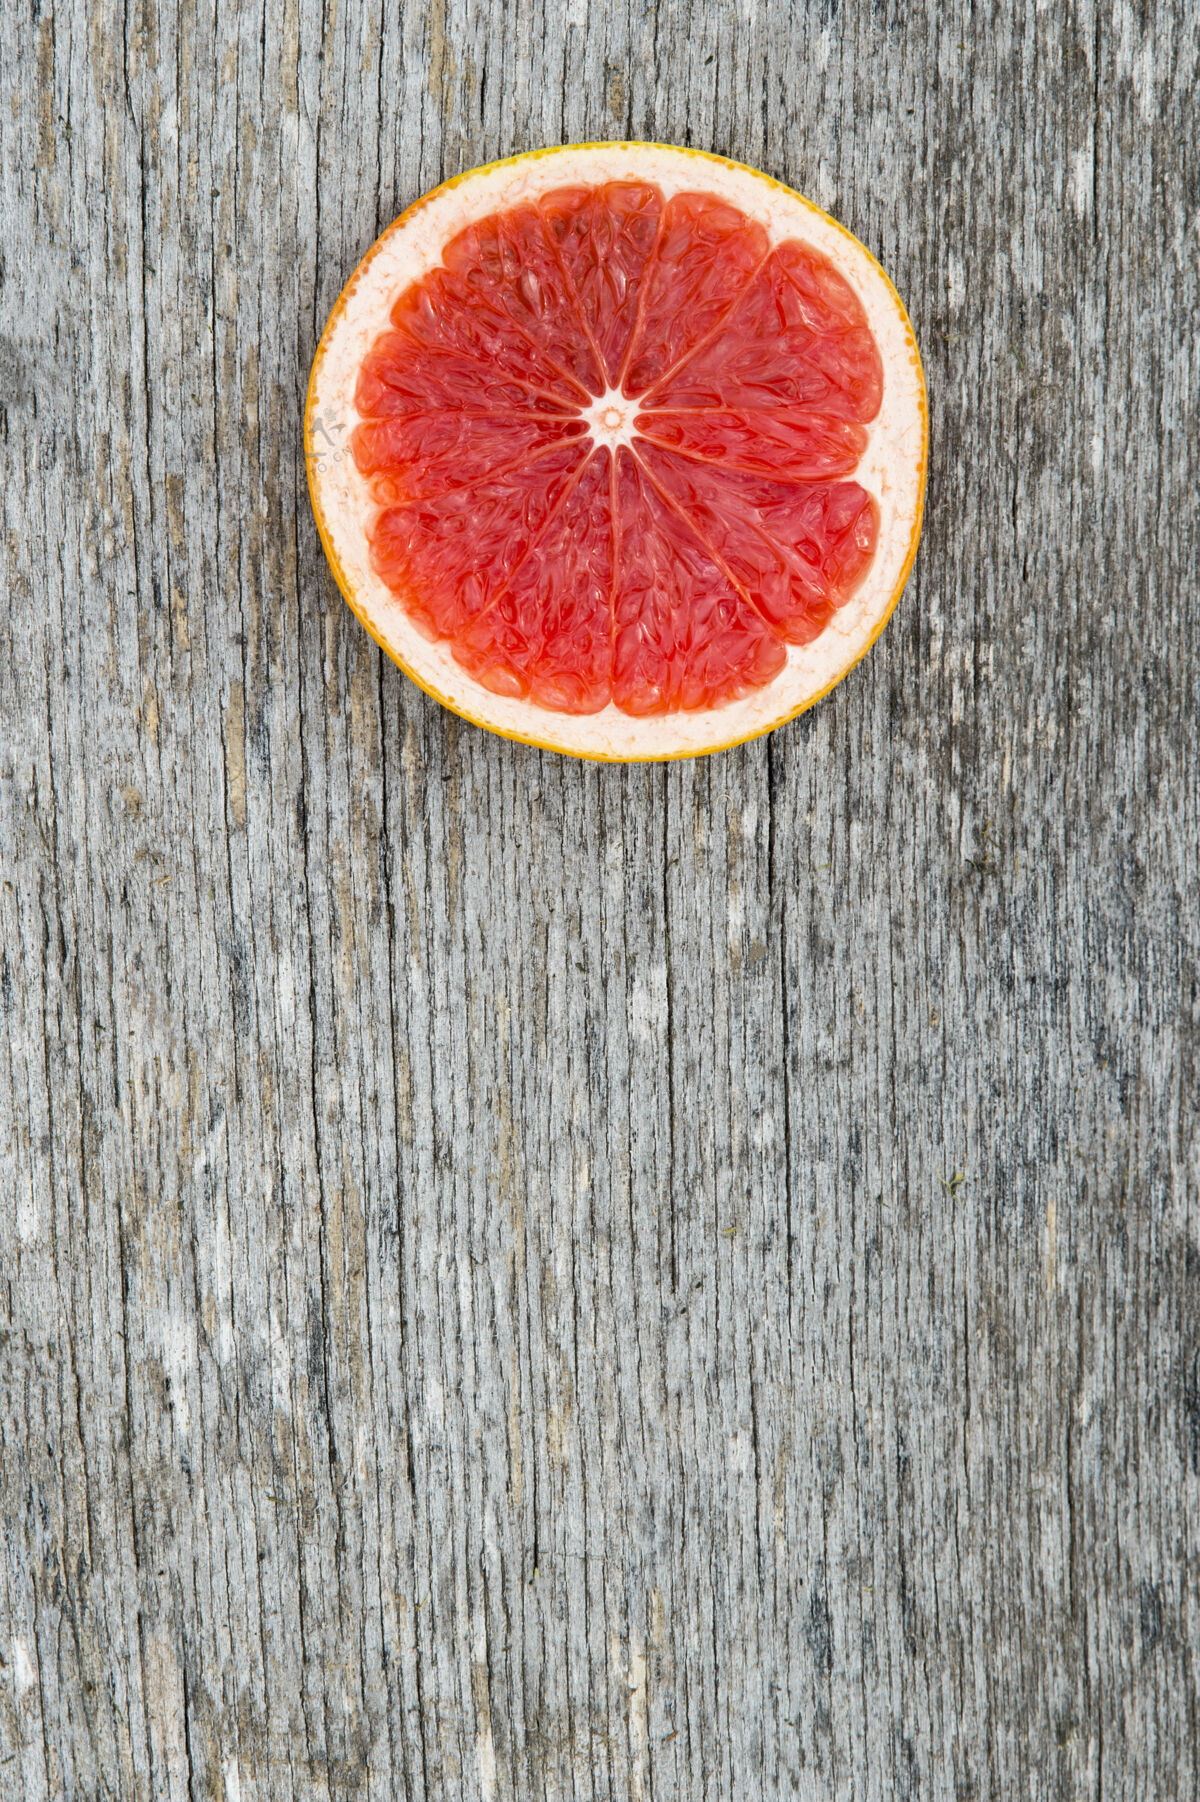 剁碎粉红色的成熟葡萄柚片放在古老的木制背景上葡萄柚成熟元素